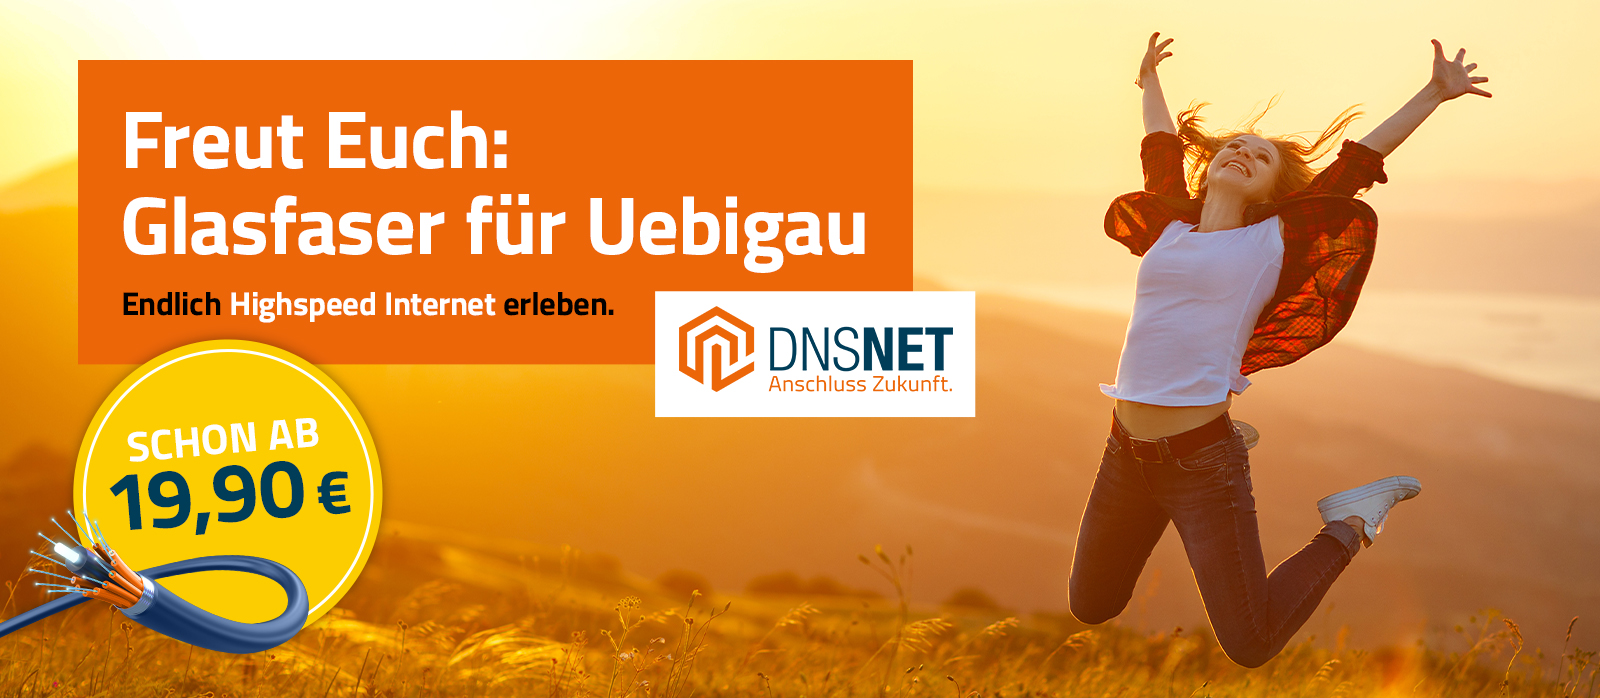 DNSNET-Web-Banner-Uebigau-1600x698